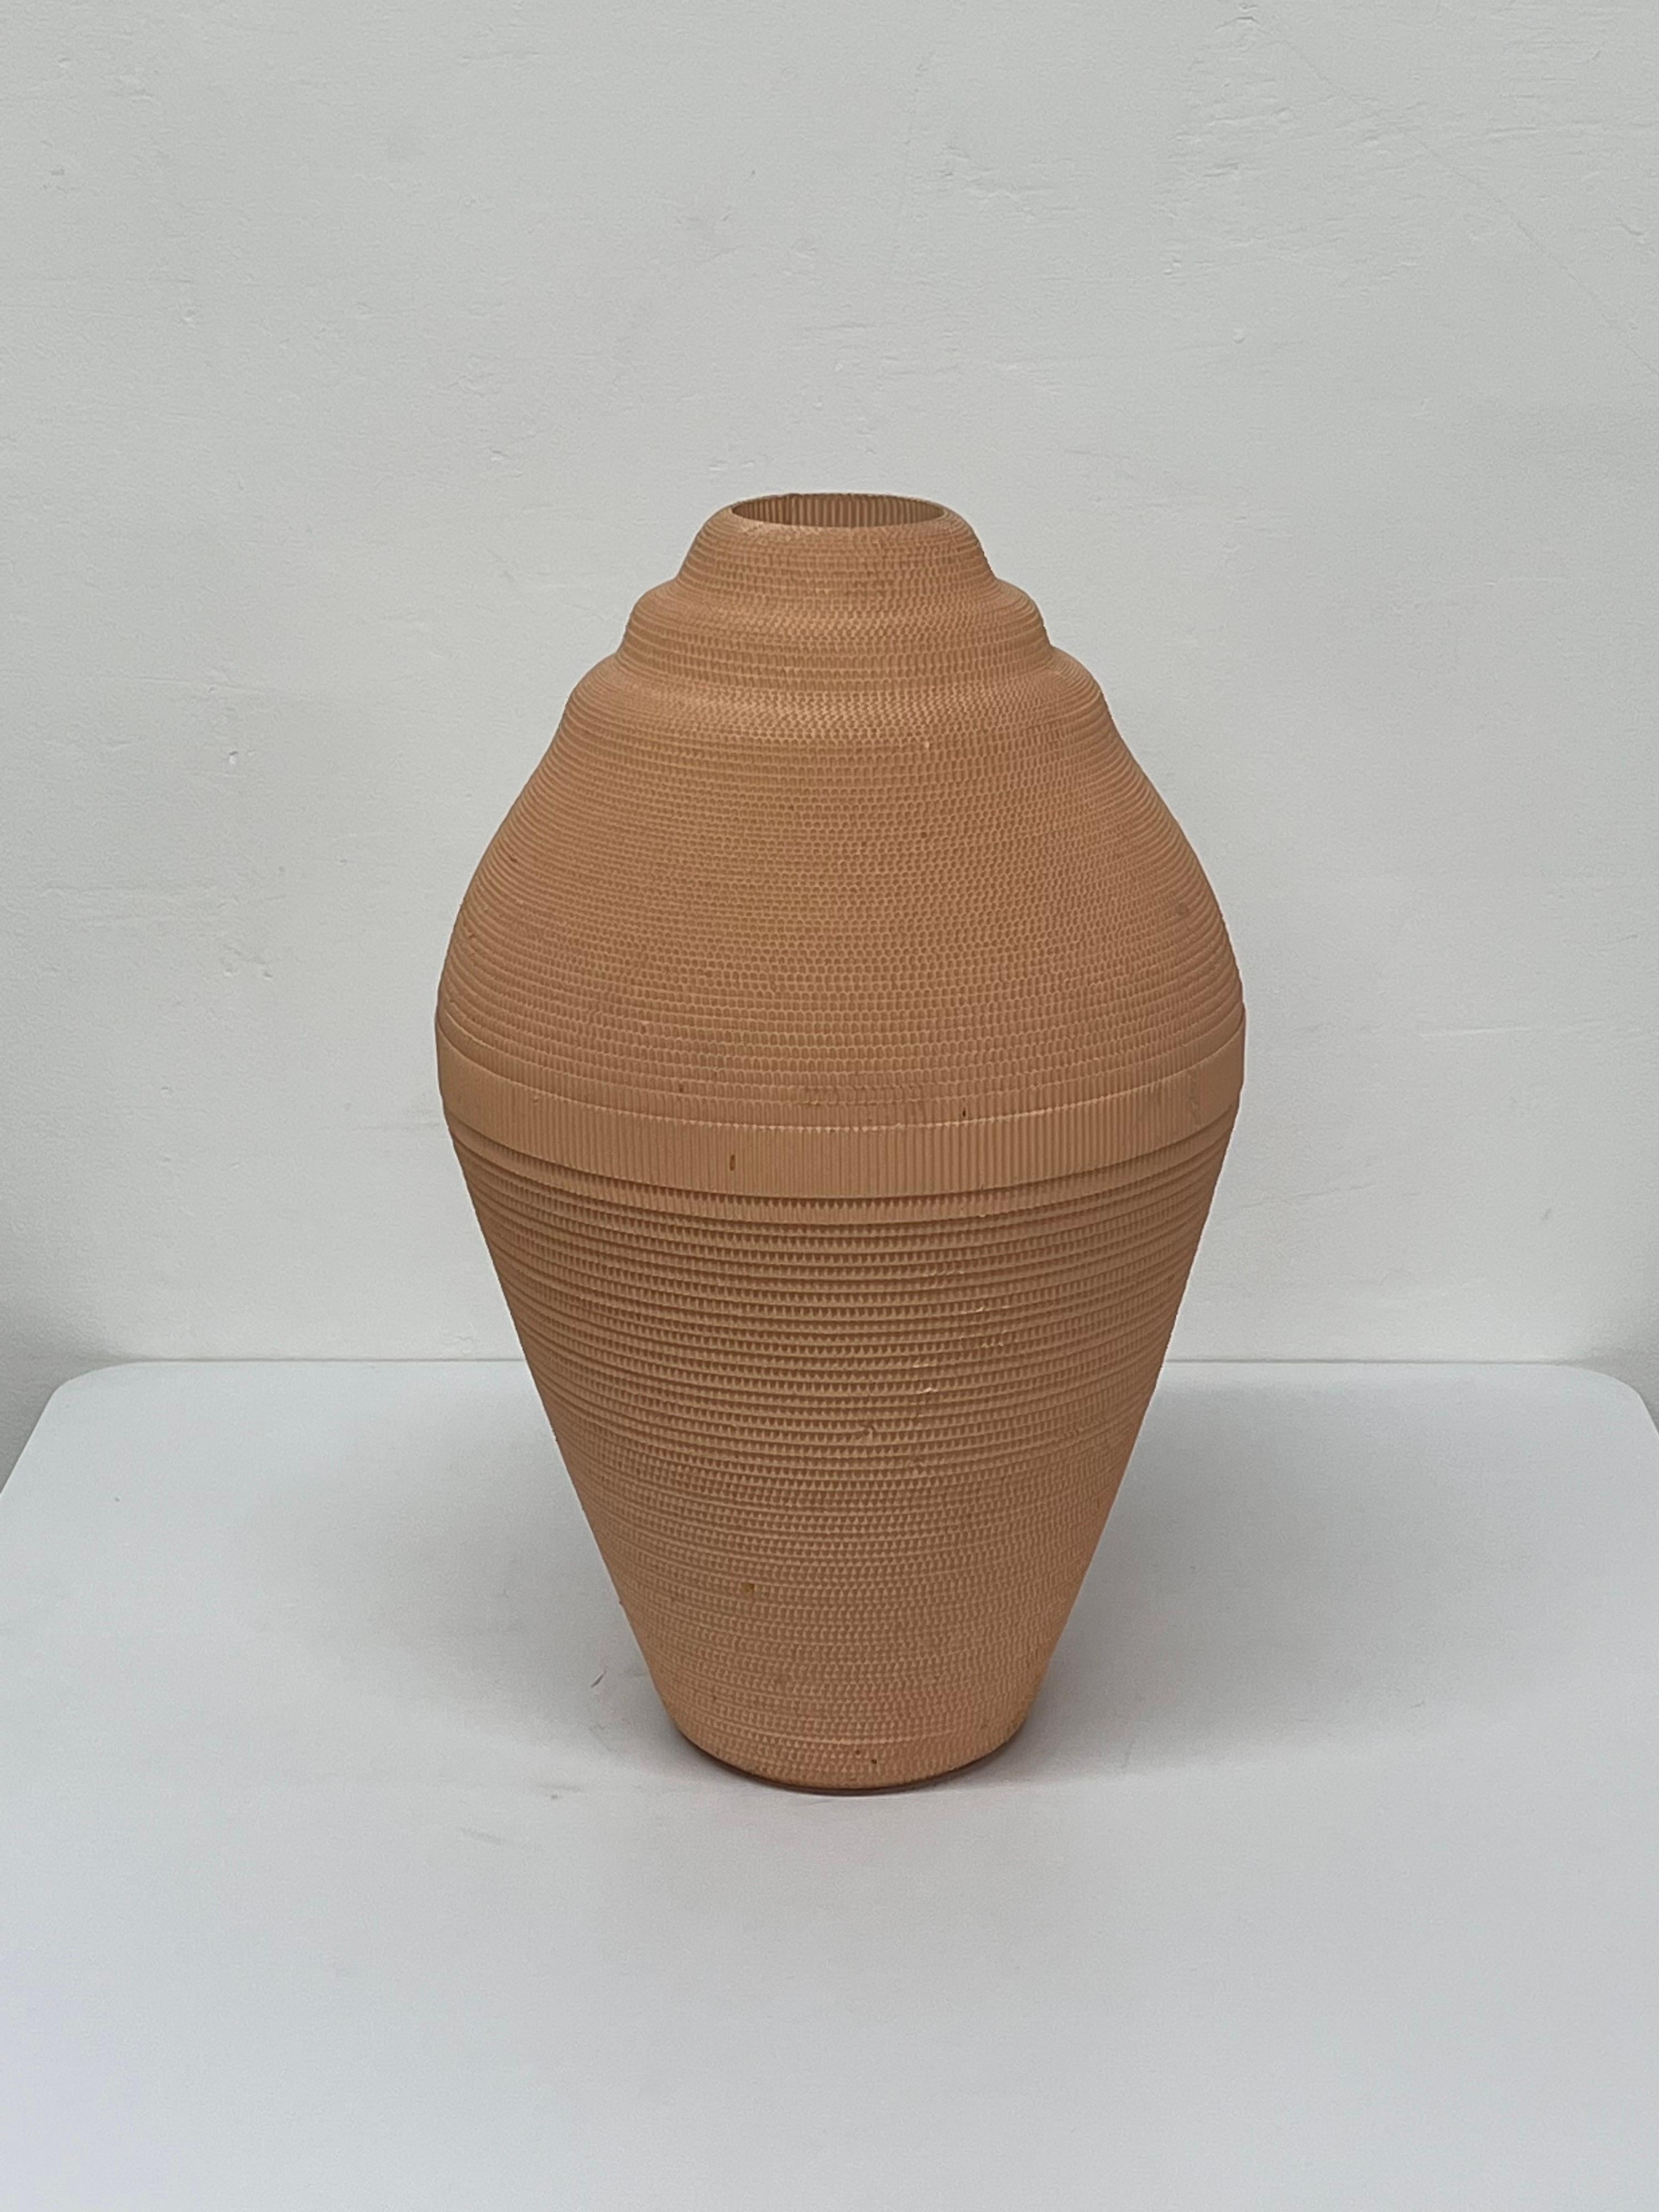 Vase en carton ondulé rendu en pêche claire par Flute, Chicago vers les années 1980. A utiliser de préférence avec des arrangements séchés.